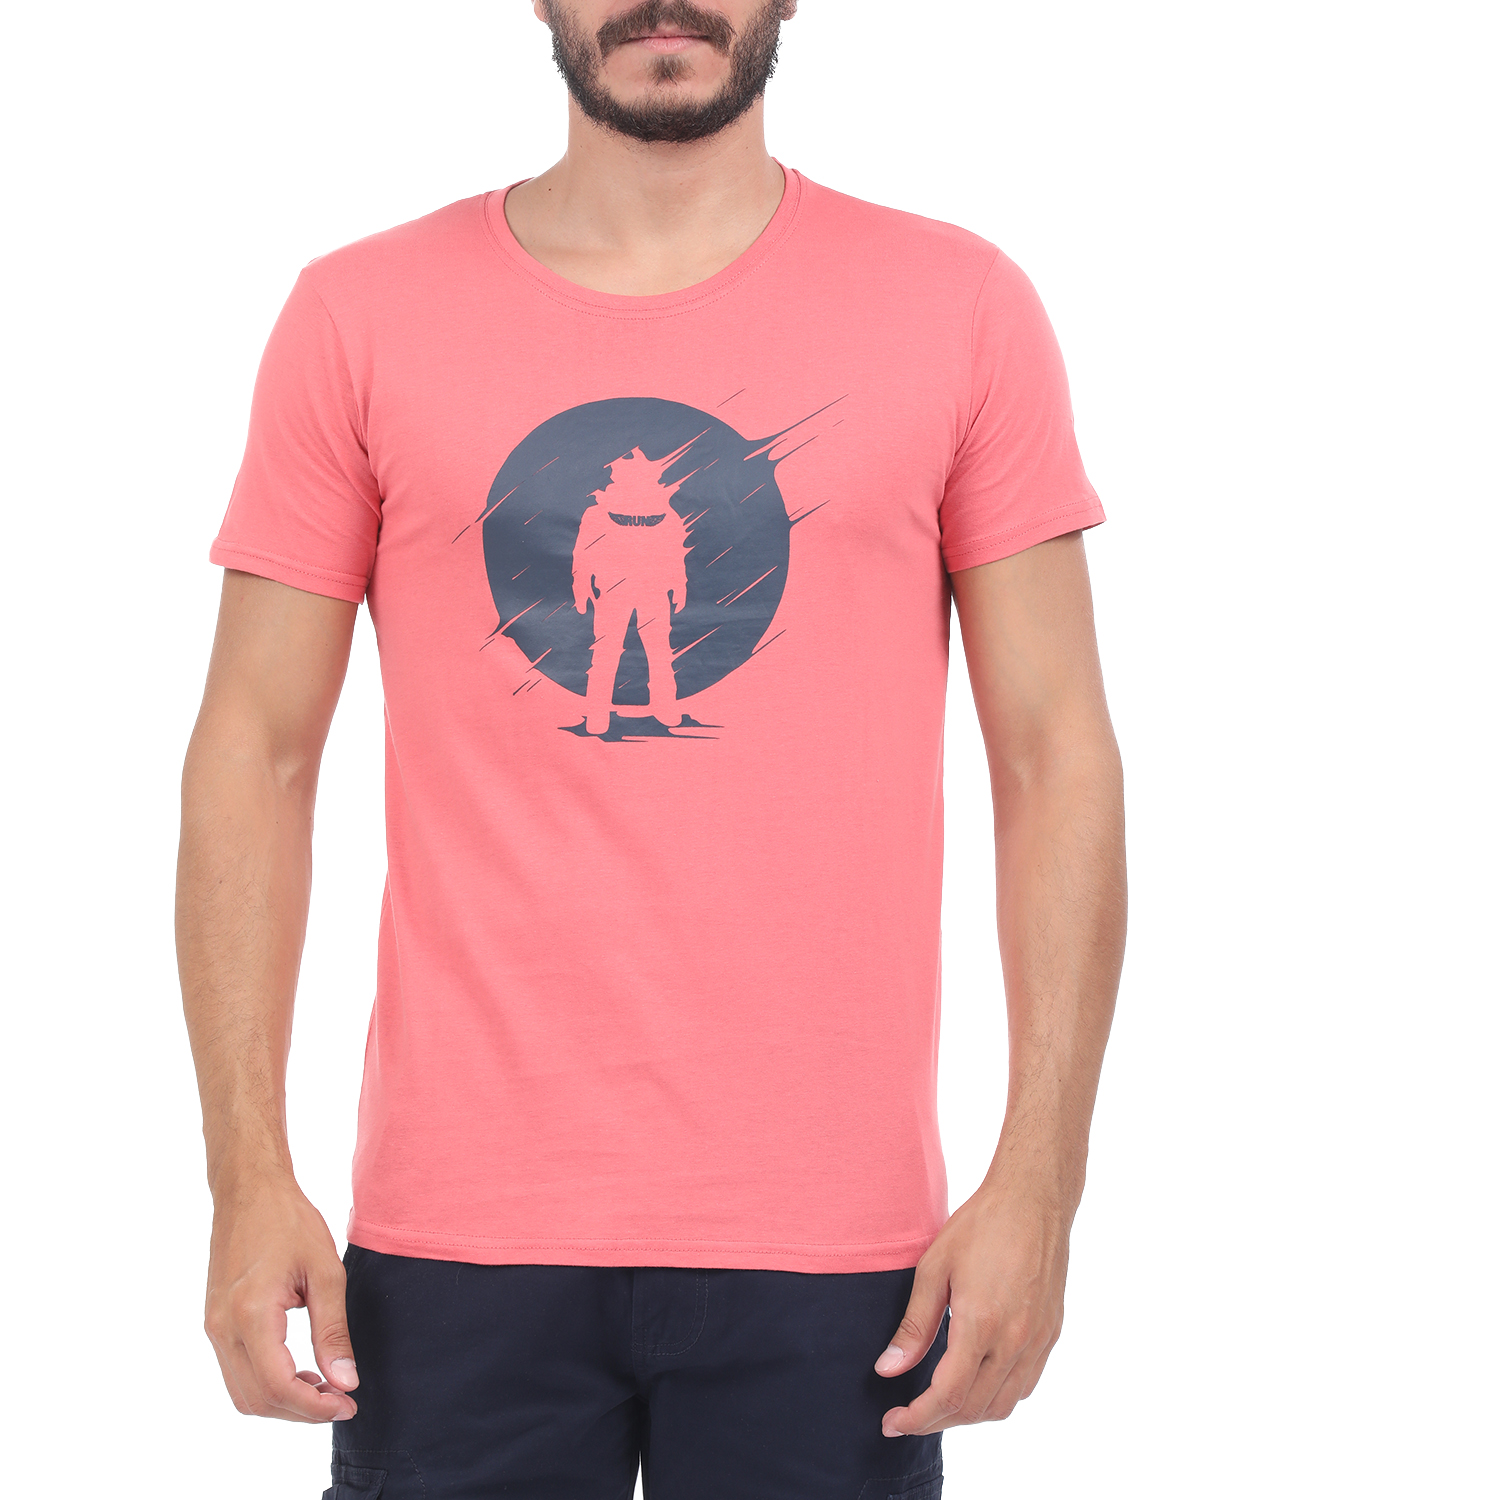 Ανδρικά/Ρούχα/Μπλούζες/Κοντομάνικες RUN - Ανδρική μπλούζα RUN BOX 9 ροζ